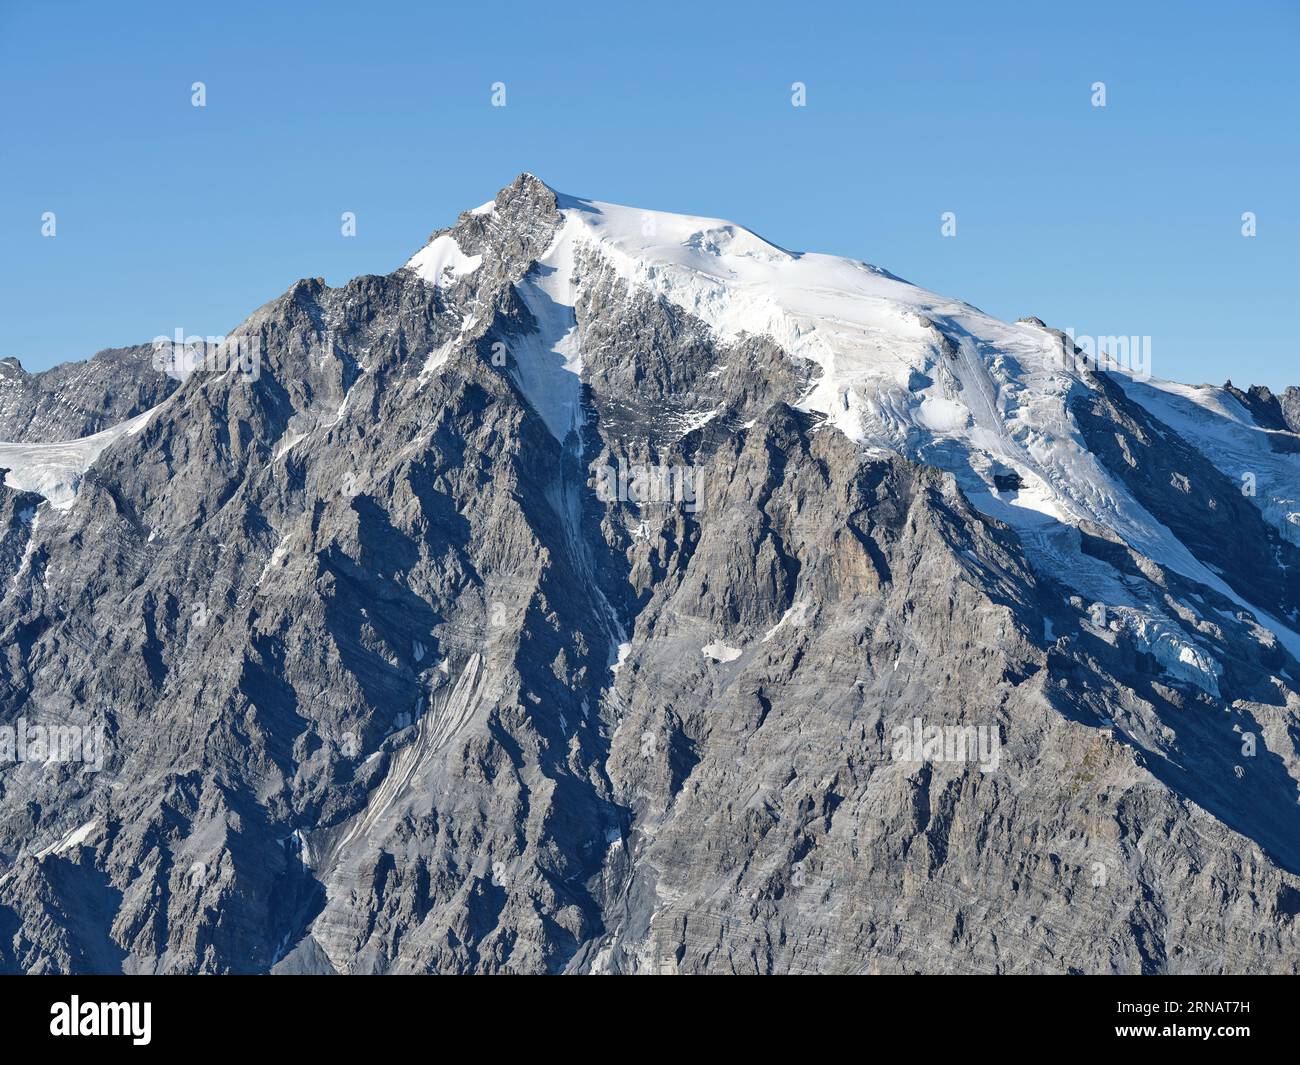 VUE AÉRIENNE. Les Ortles (en italien) ou Ortler (en allemand), un sommet de 3905 mètres de haut dans le massif des Ortles. Stilfs, Trentin-Haut-Adige, Italie. Banque D'Images